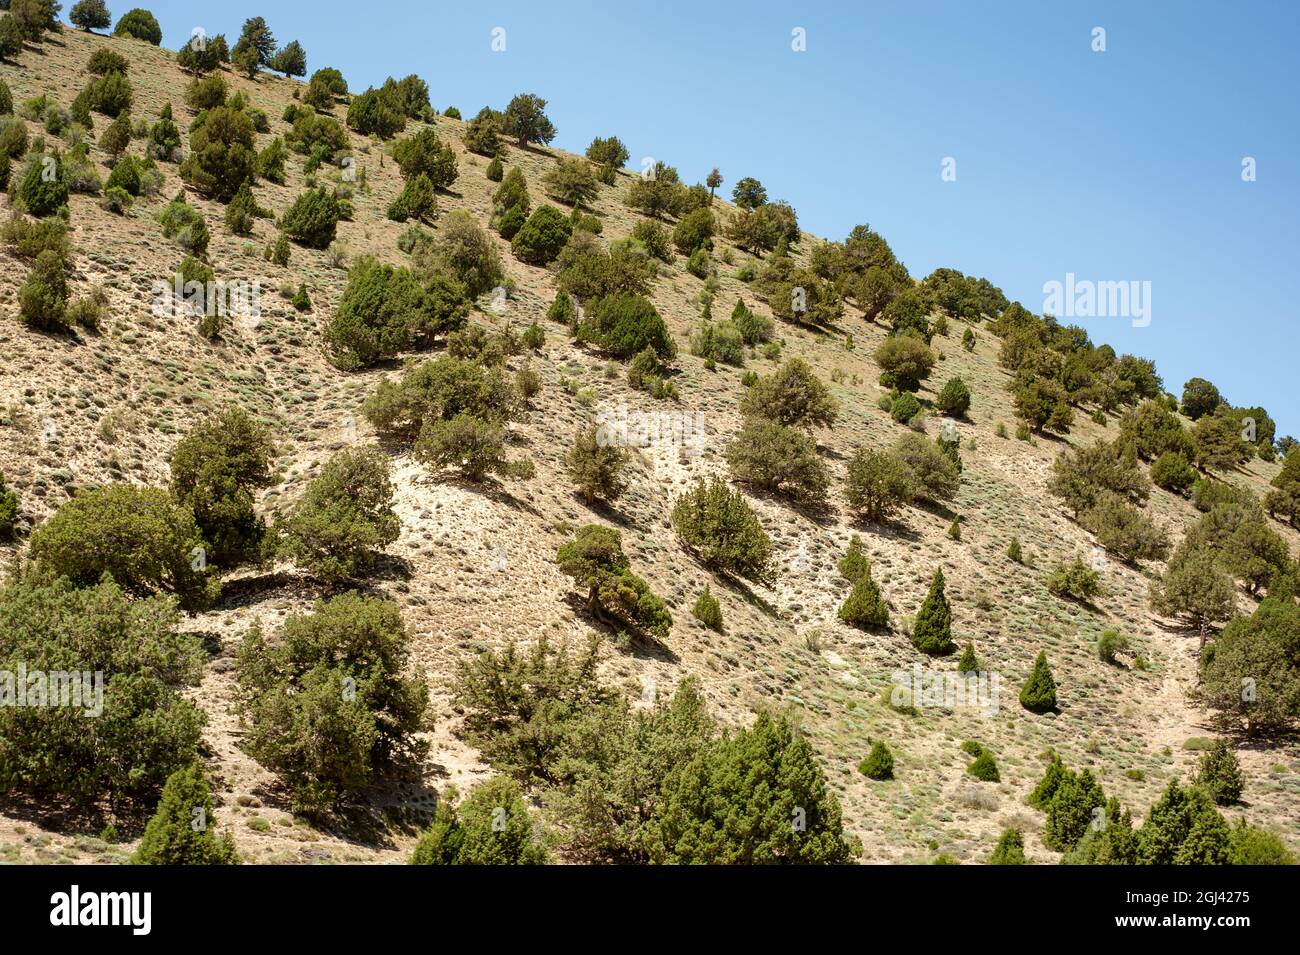 Montagnes avec quelques arbres et ciel bleu dans la province de mazandaran, Iran Banque D'Images